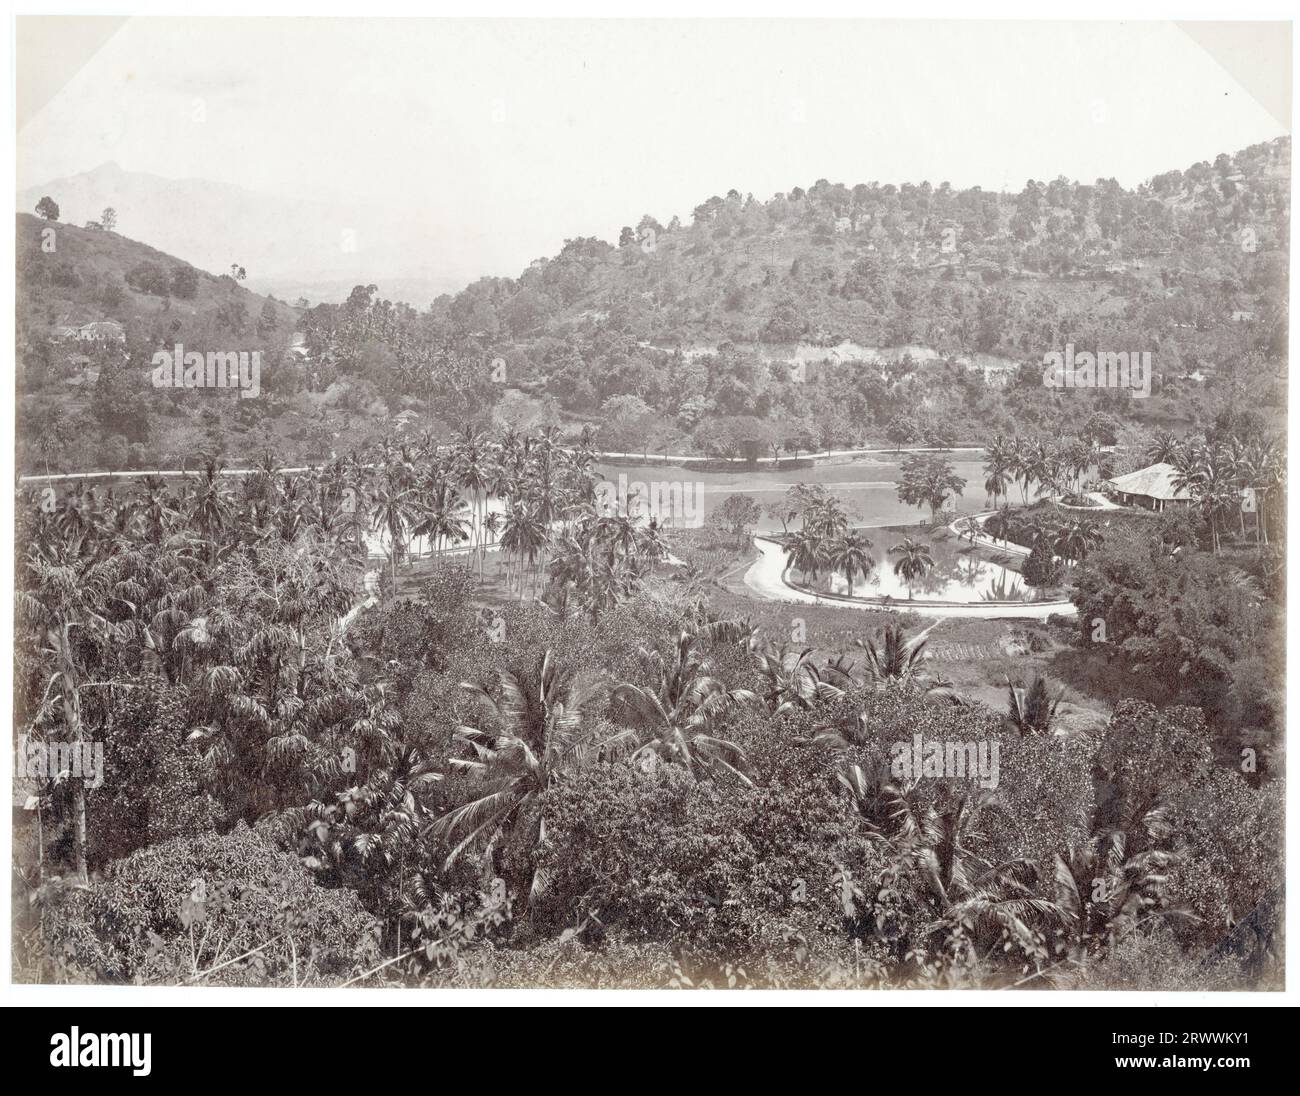 Vue sur les collines et le lac à Kandy, une station de colline près de Colombo. Les collines basses ont des palmiers densément plantés et un feuillage luxuriant. Certains bâtiments peuvent être vus dans les arbres et il y a un pavillon à côté du lac. Légende : Kandy. Banque D'Images